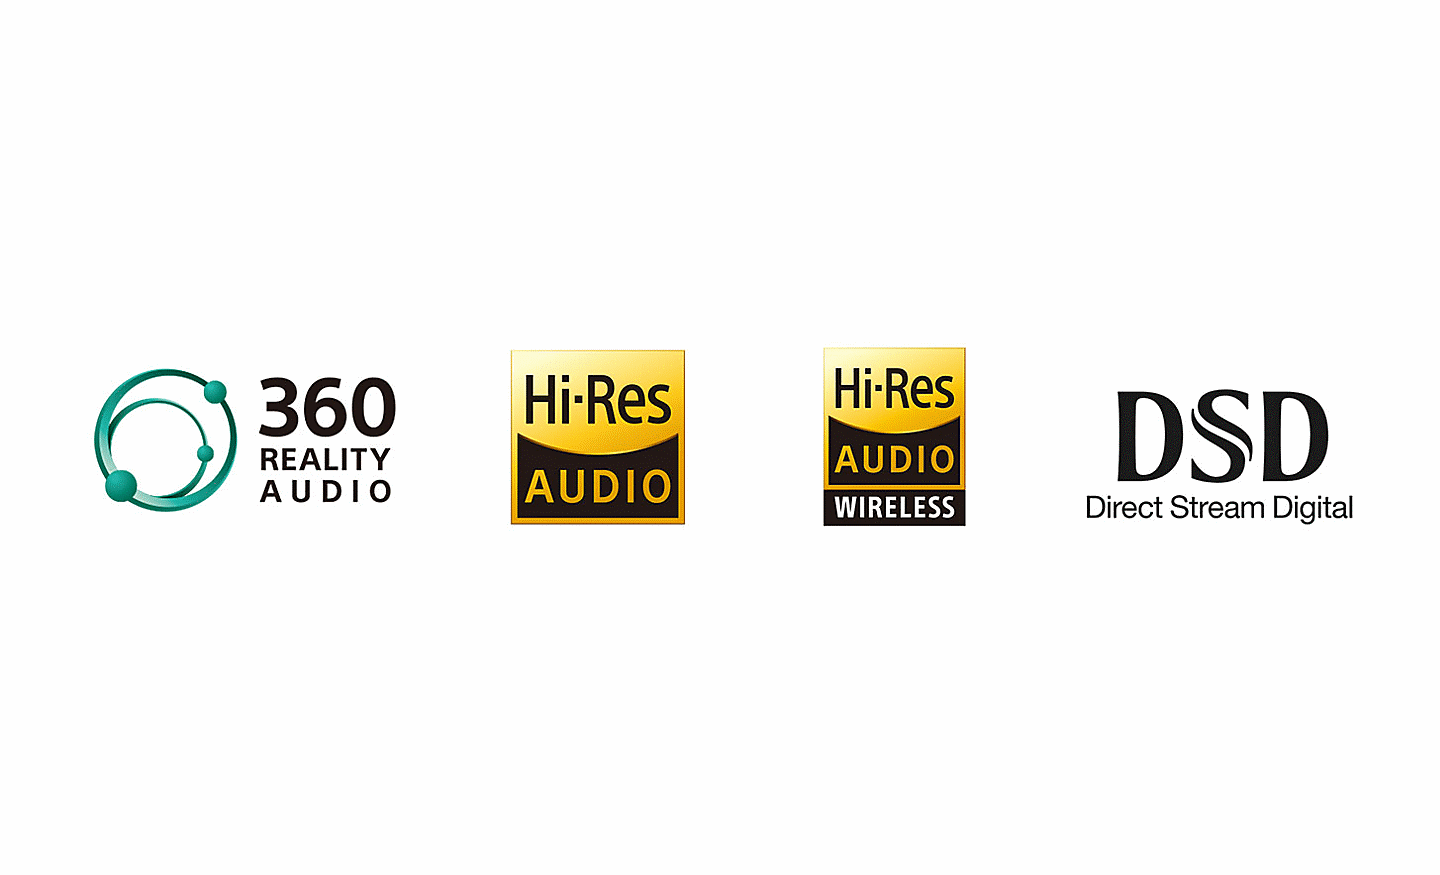 360 Reality Audio-logotyp, Hi-Res Audio-logotyp, Hi-Res Audio Wireless-logotyp, DSD Direct Stream Digital-logotyp